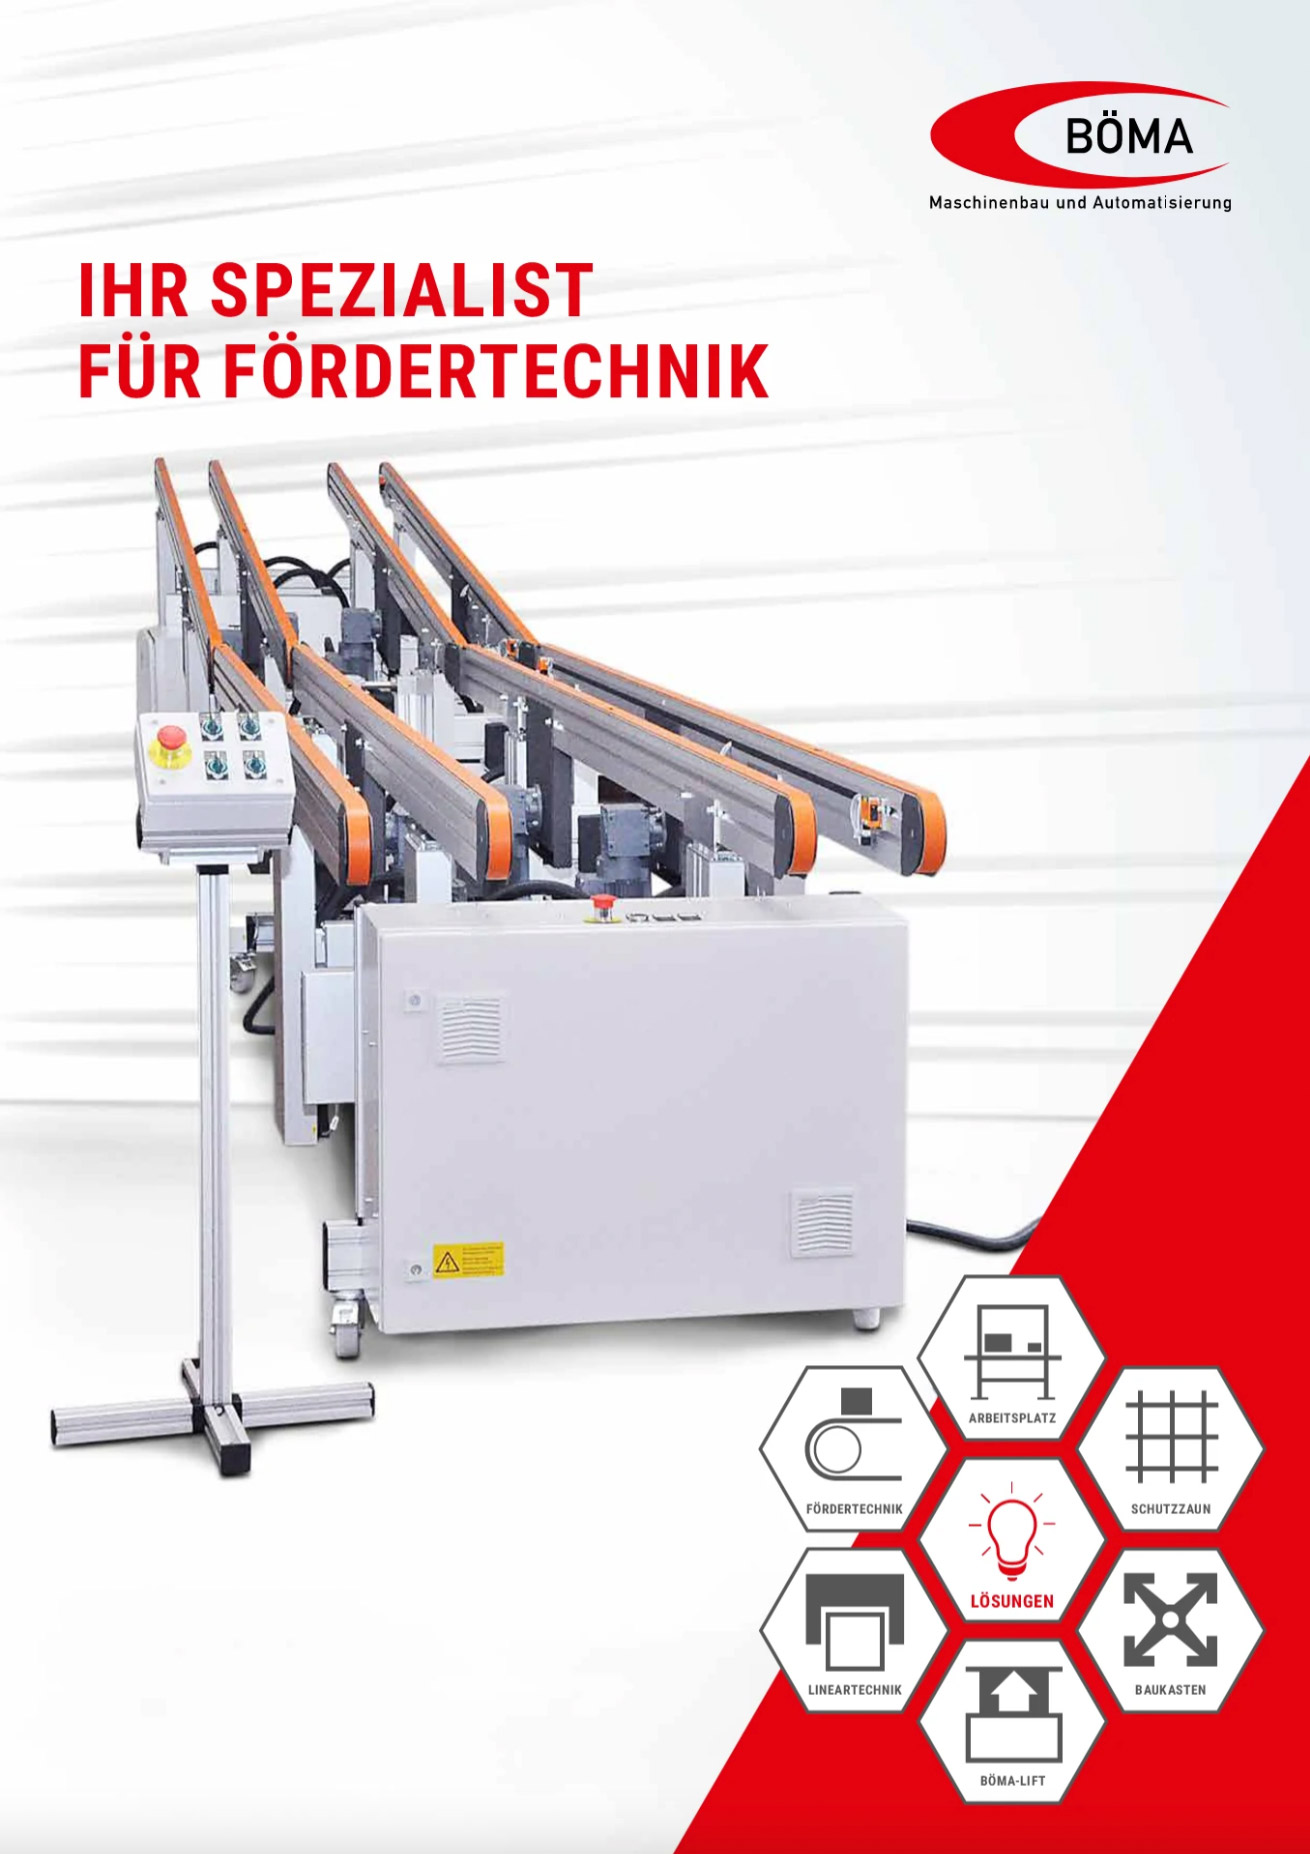 Borschüre Böma Maschinenbau und Fördertechnik aus Alberschwende in Vorarlberg, Österreich